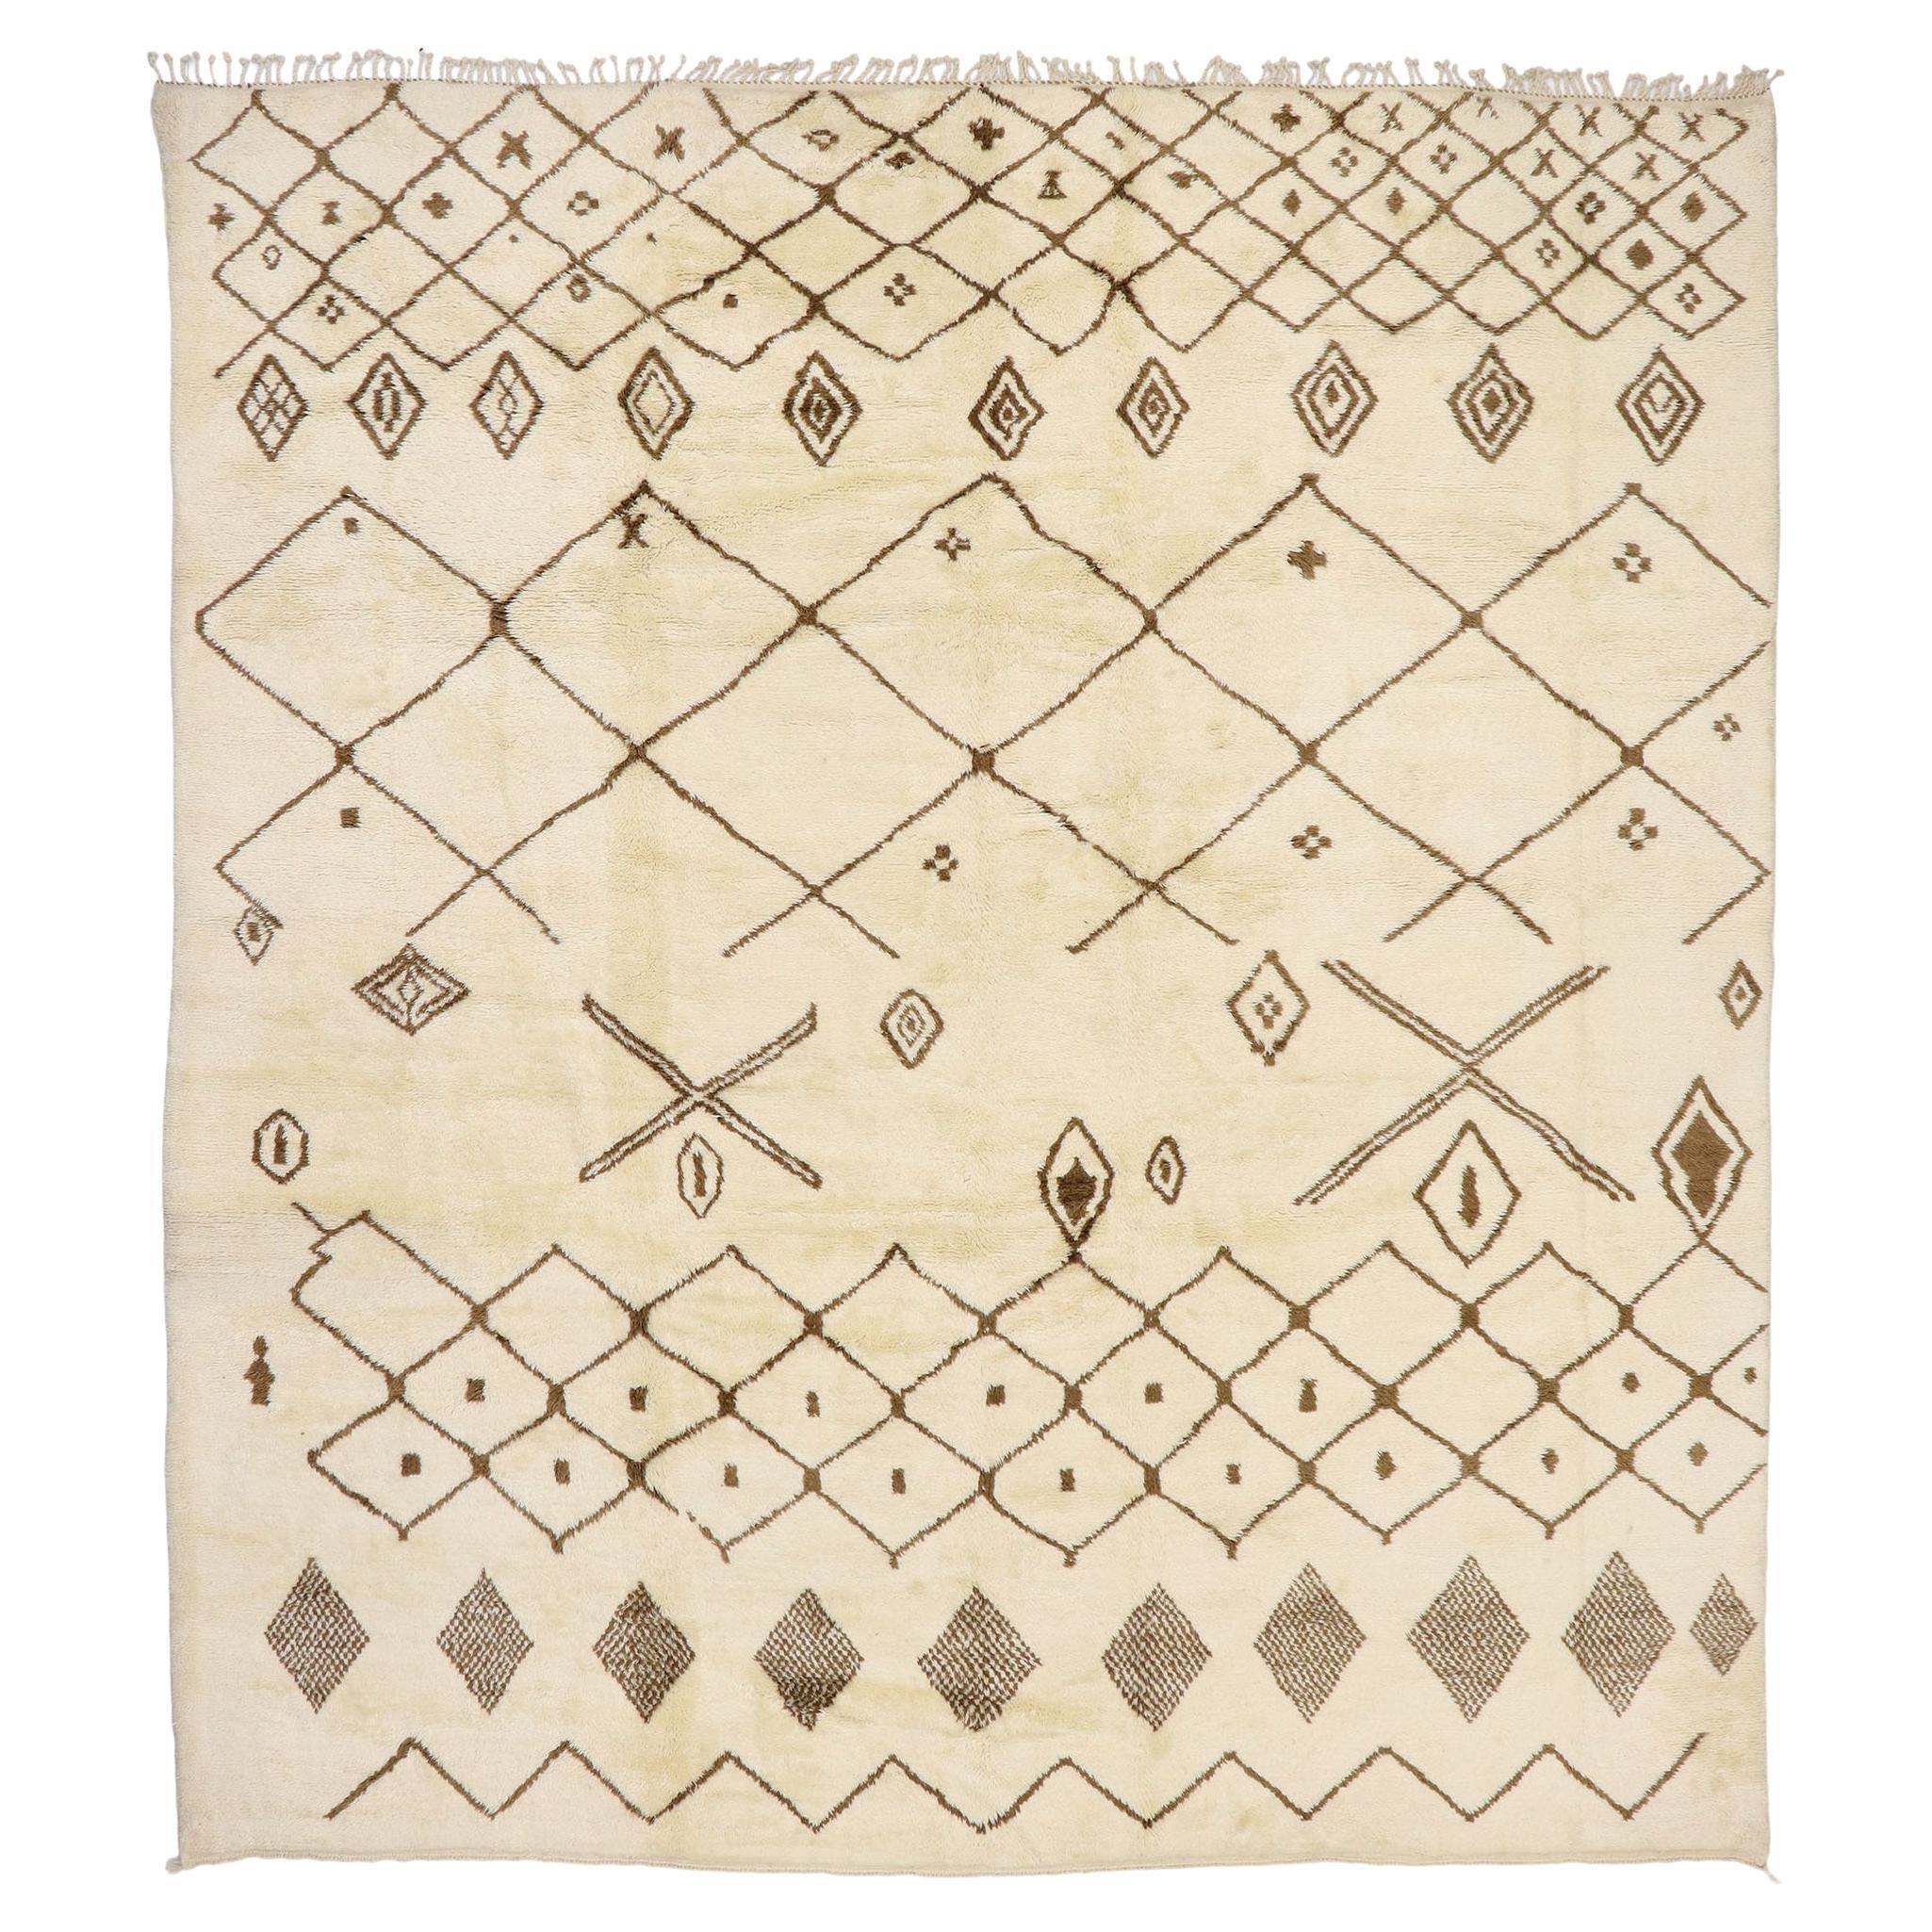 Grand tapis berbère marocain authentique, le confort hygge rencontre le charme nomade